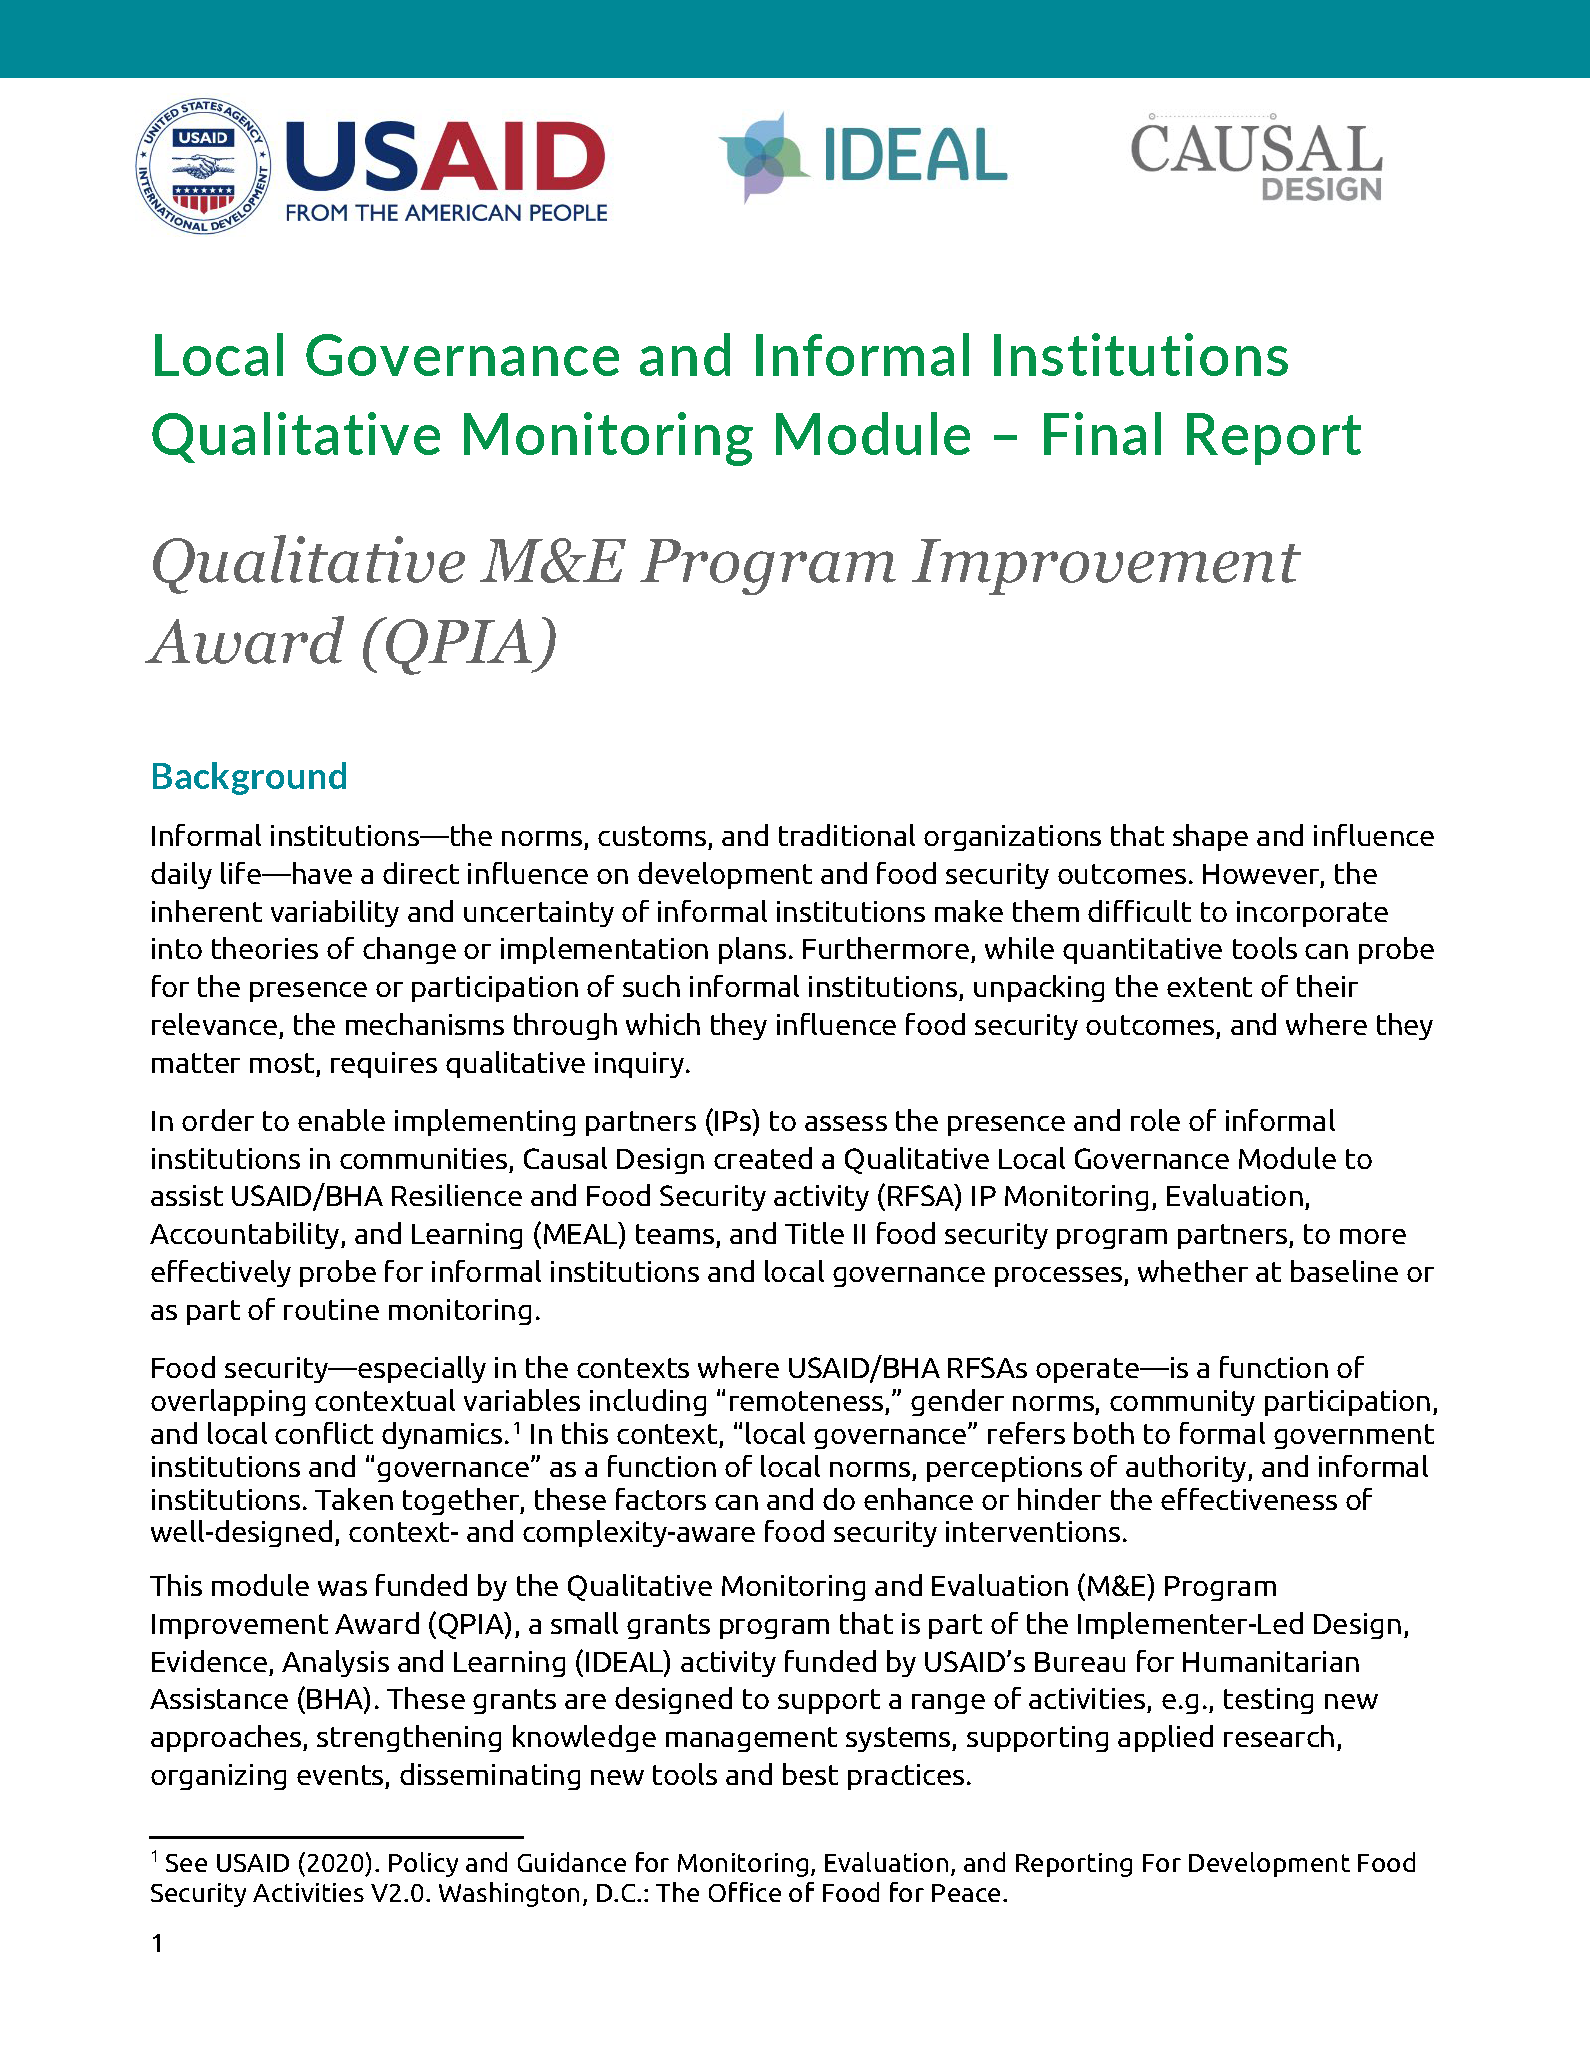 Page de couverture du module de suivi qualitatif de la gouvernance locale et des institutions informelles - Rapport final